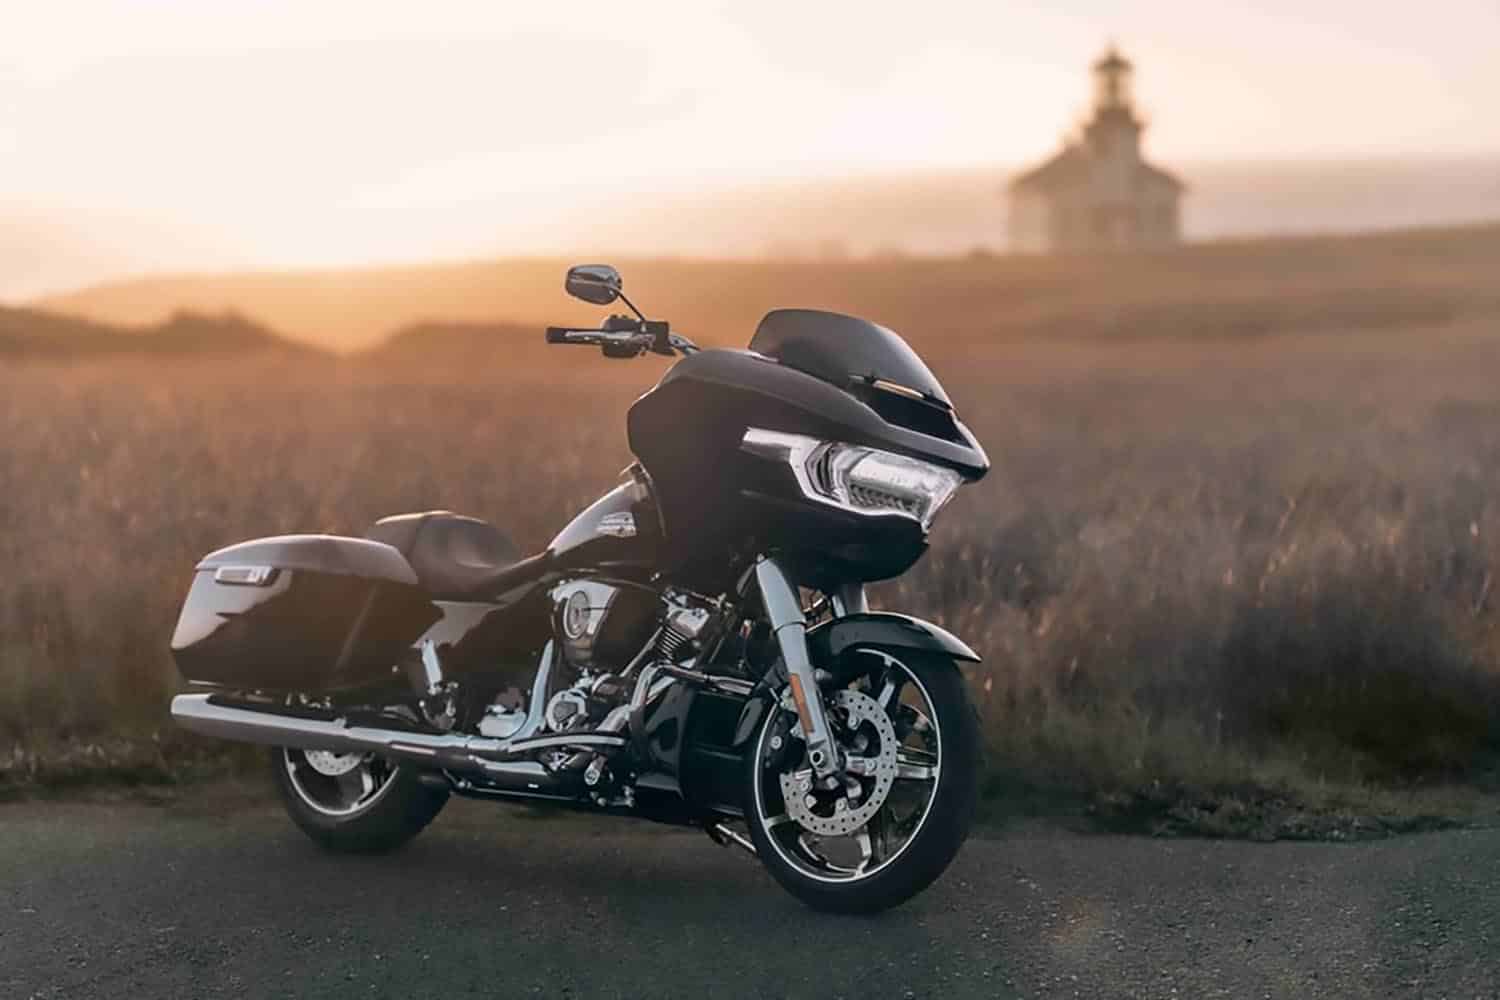 La Harley-Davidson Street Glide monta un motor más potente